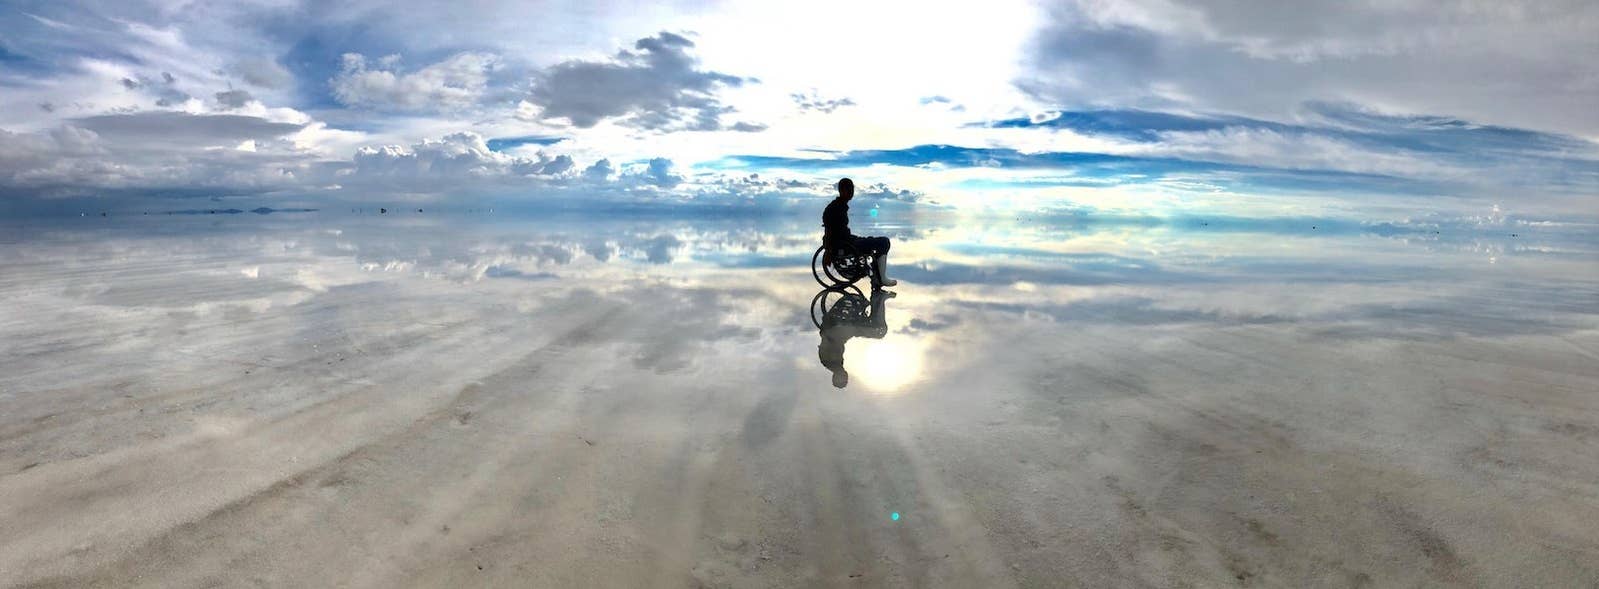 18歳で 人生終わった 男性が車椅子で世界一周した話